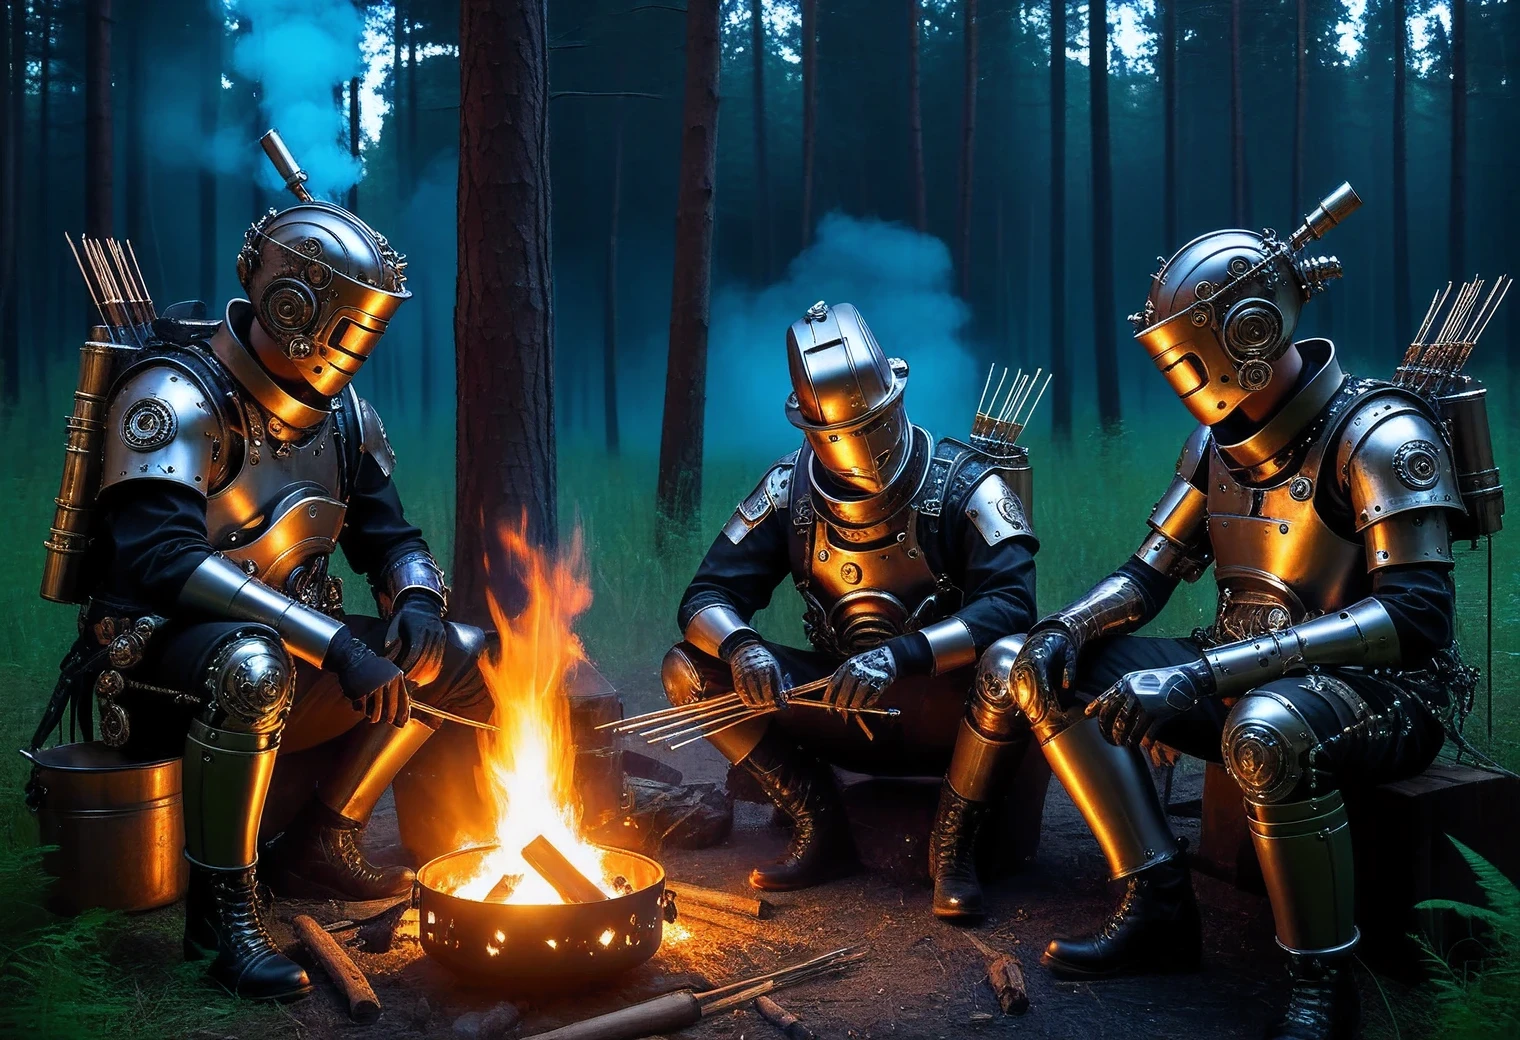 3 个复杂的机器人晚上坐在篝火旁的森林里，用烤肉串煎炸金属齿轮, 高细节, 机器人的细节展示, 蒸汽朋克与高科技的结合, 难的, 花丝, 真实的istic brush strokes, 高纹理平滑度, 真实的, 现存的